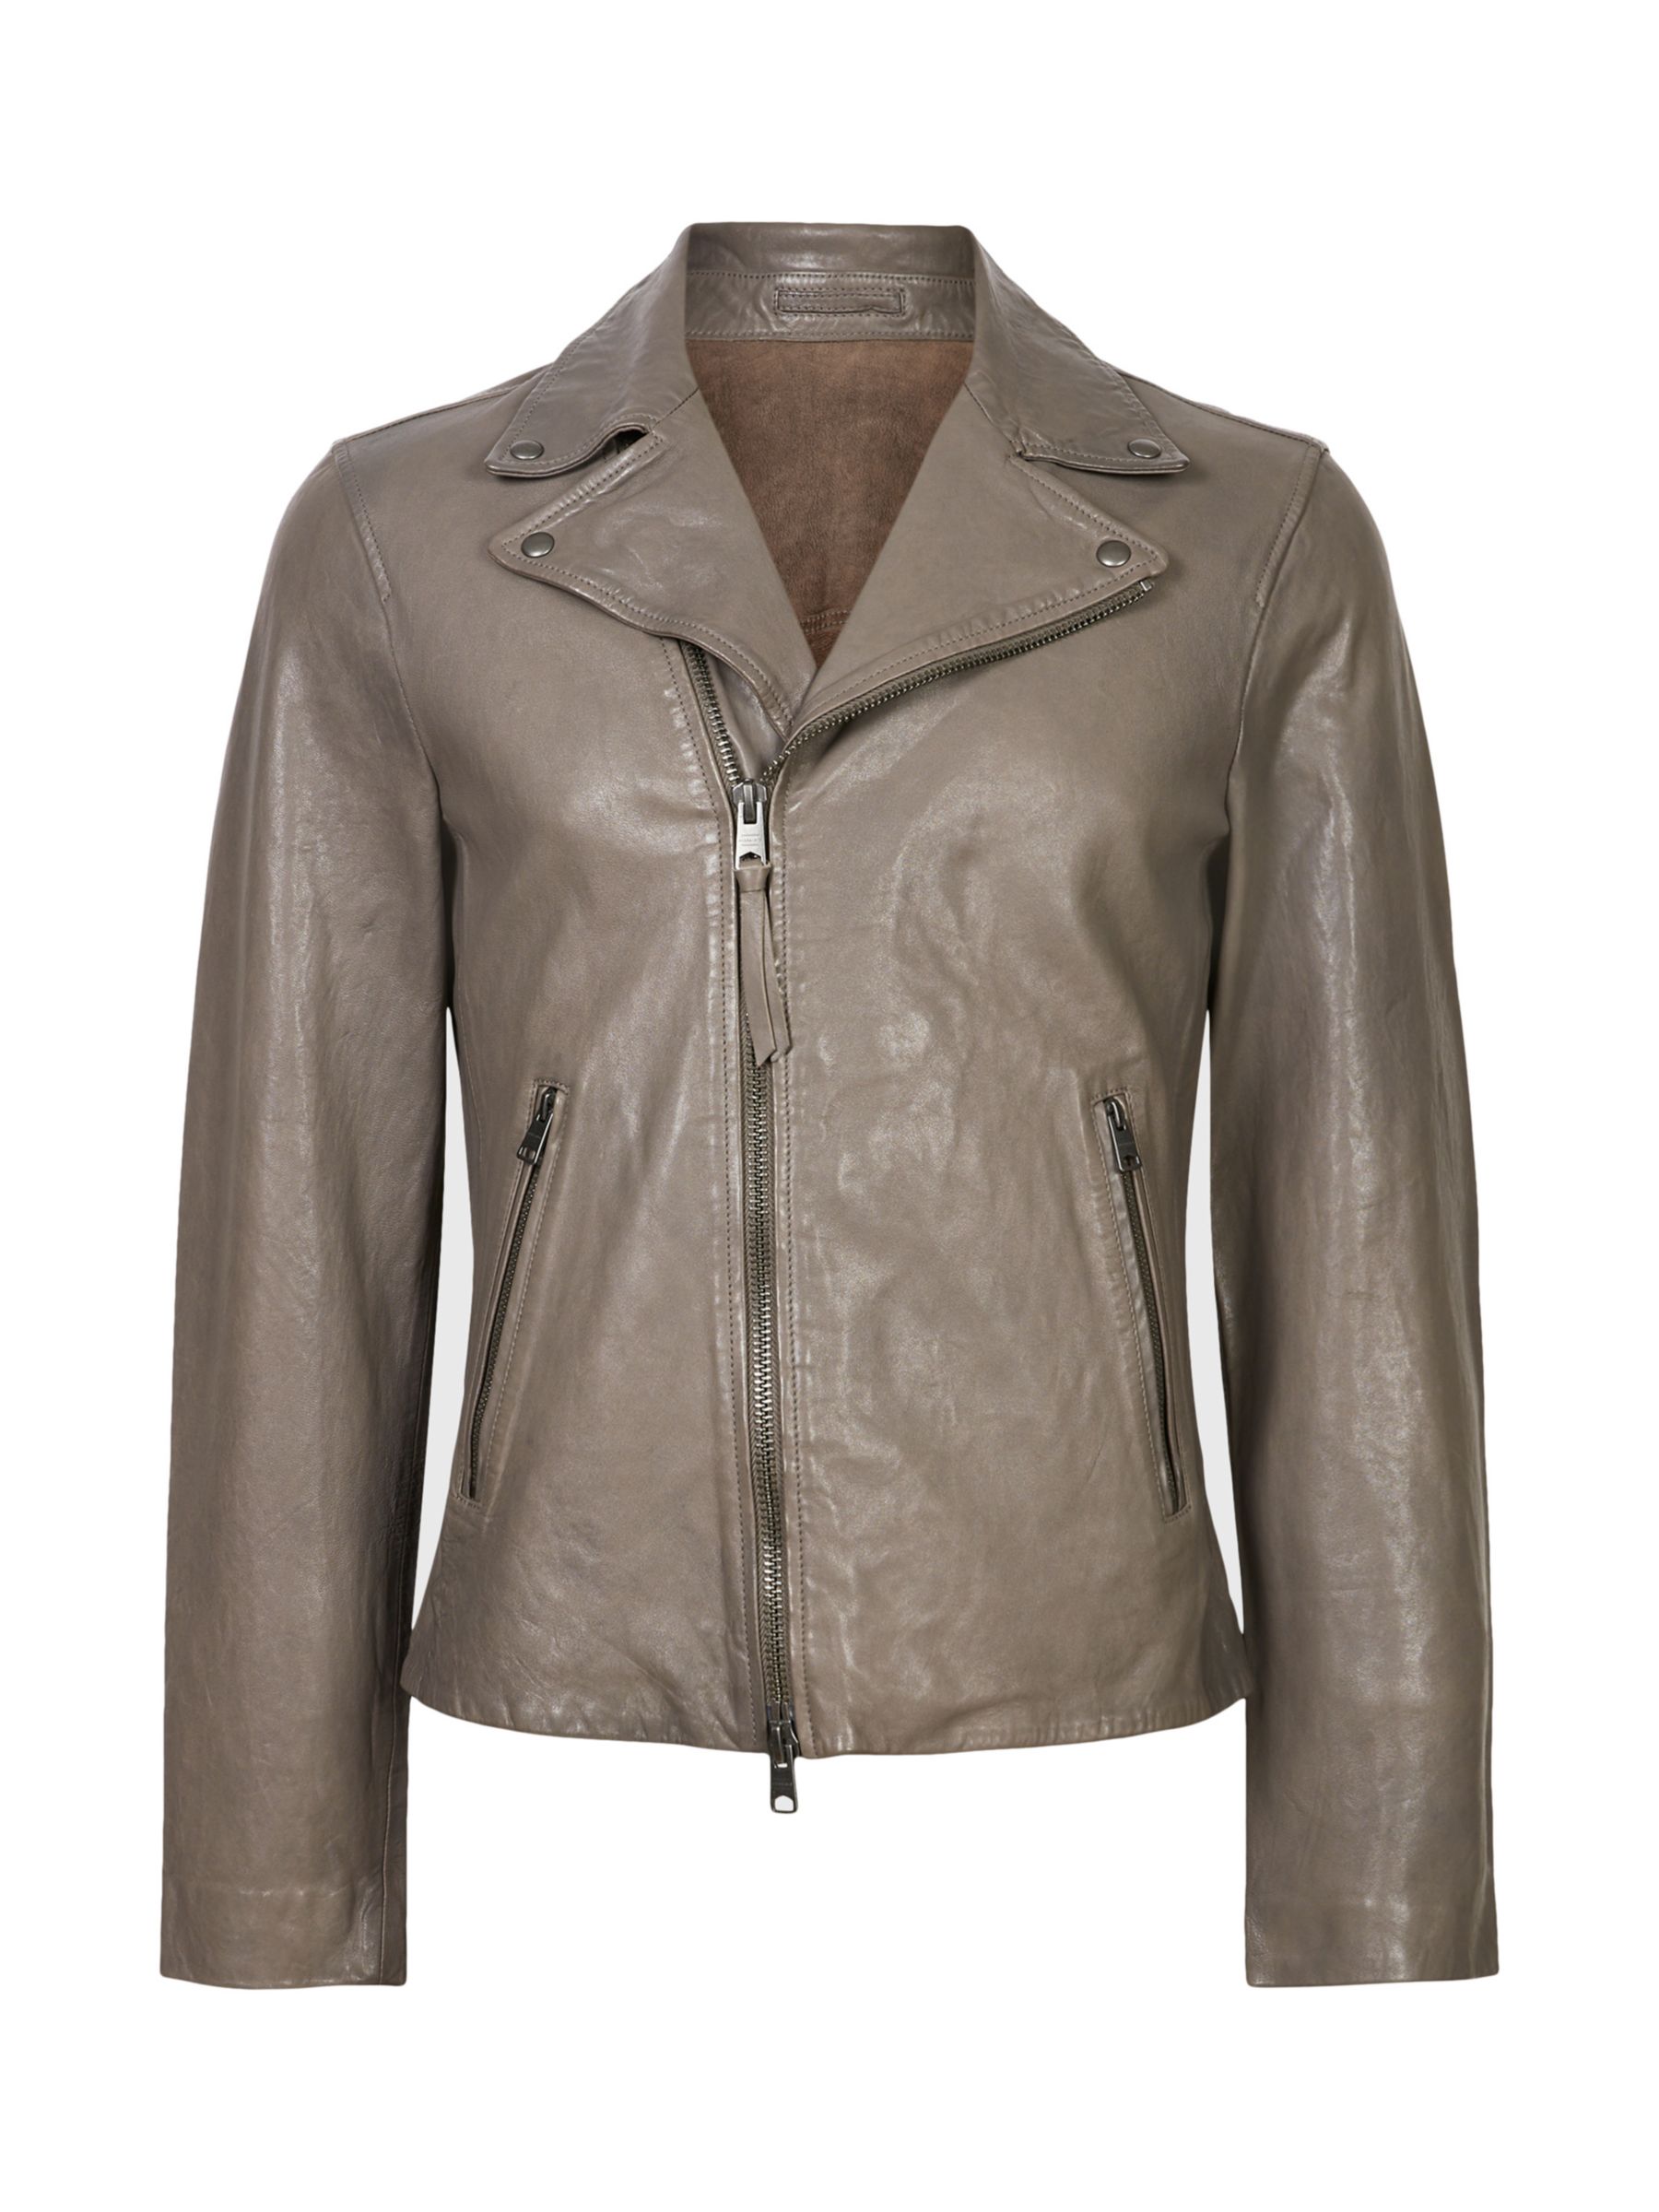 AllSaints Leo Leather Biker Jacket, Earthy Brown, S